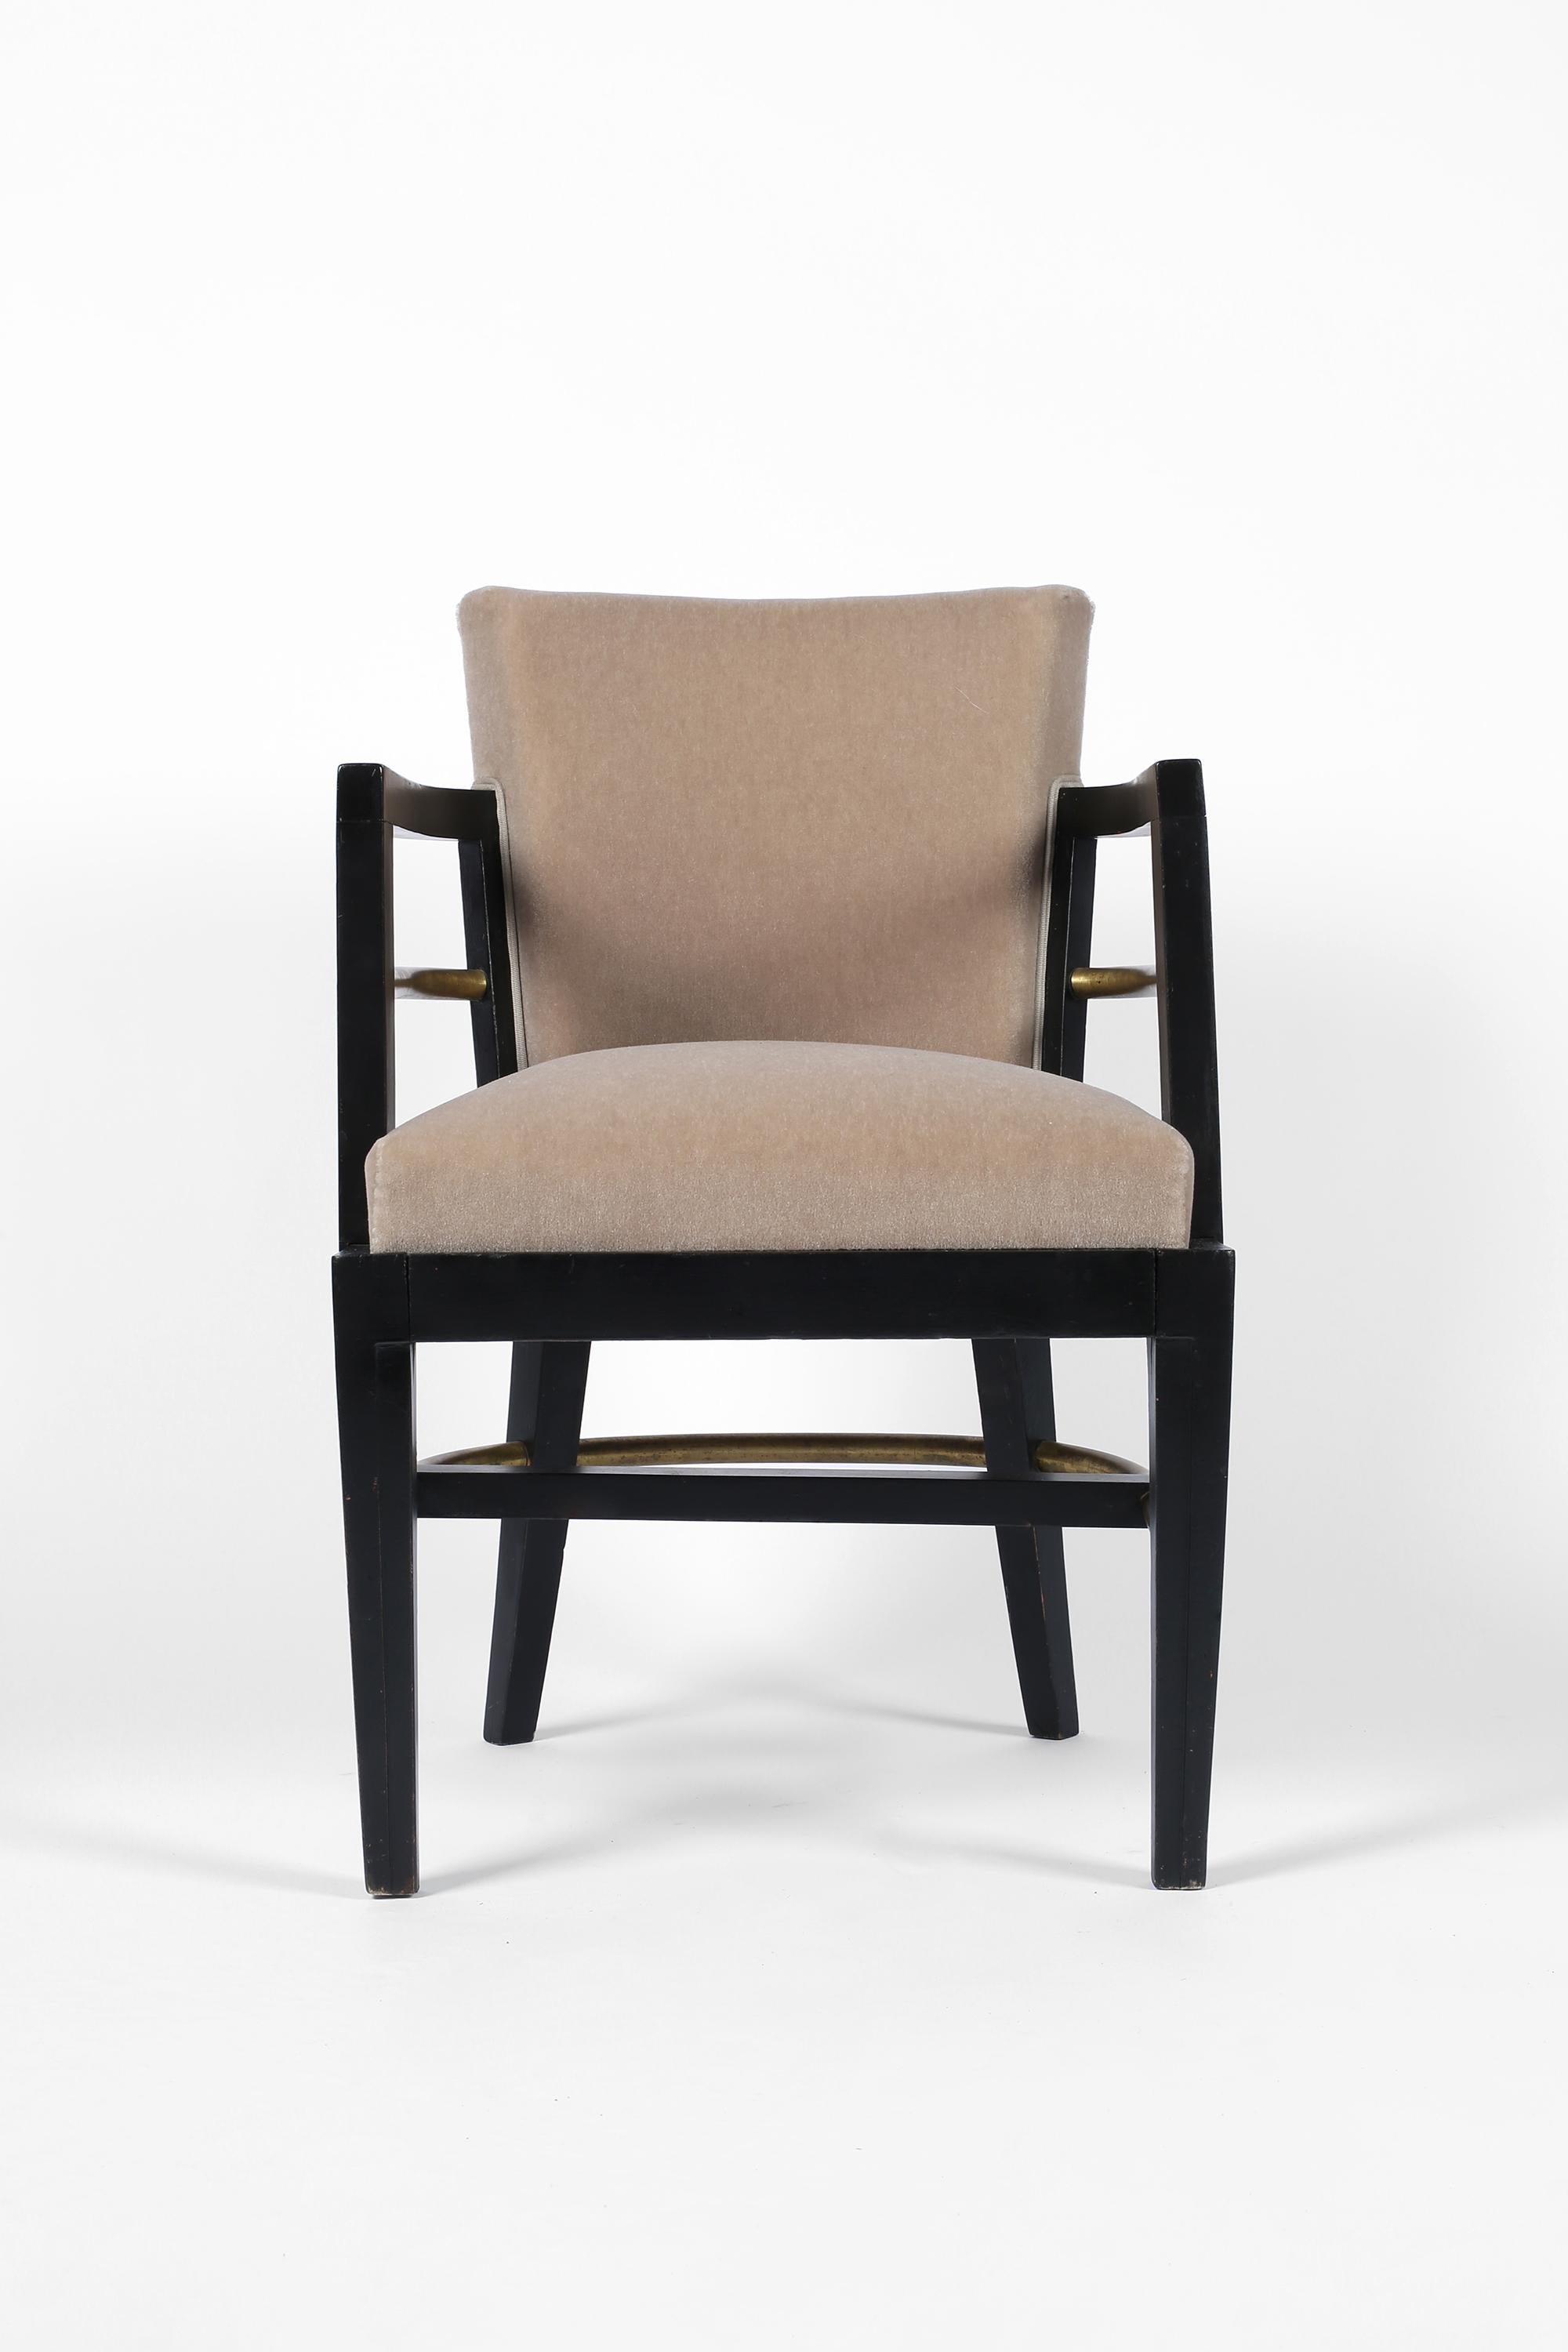 Une paire de rares fauteuils modernistes Art Deco attribués au designer du début du 20e siècle René Herbst. Les cadres sont laqués en noir avec des détails géométriques sculptés et des châssis tubulaires en laiton. Ils ont été récemment recouverts